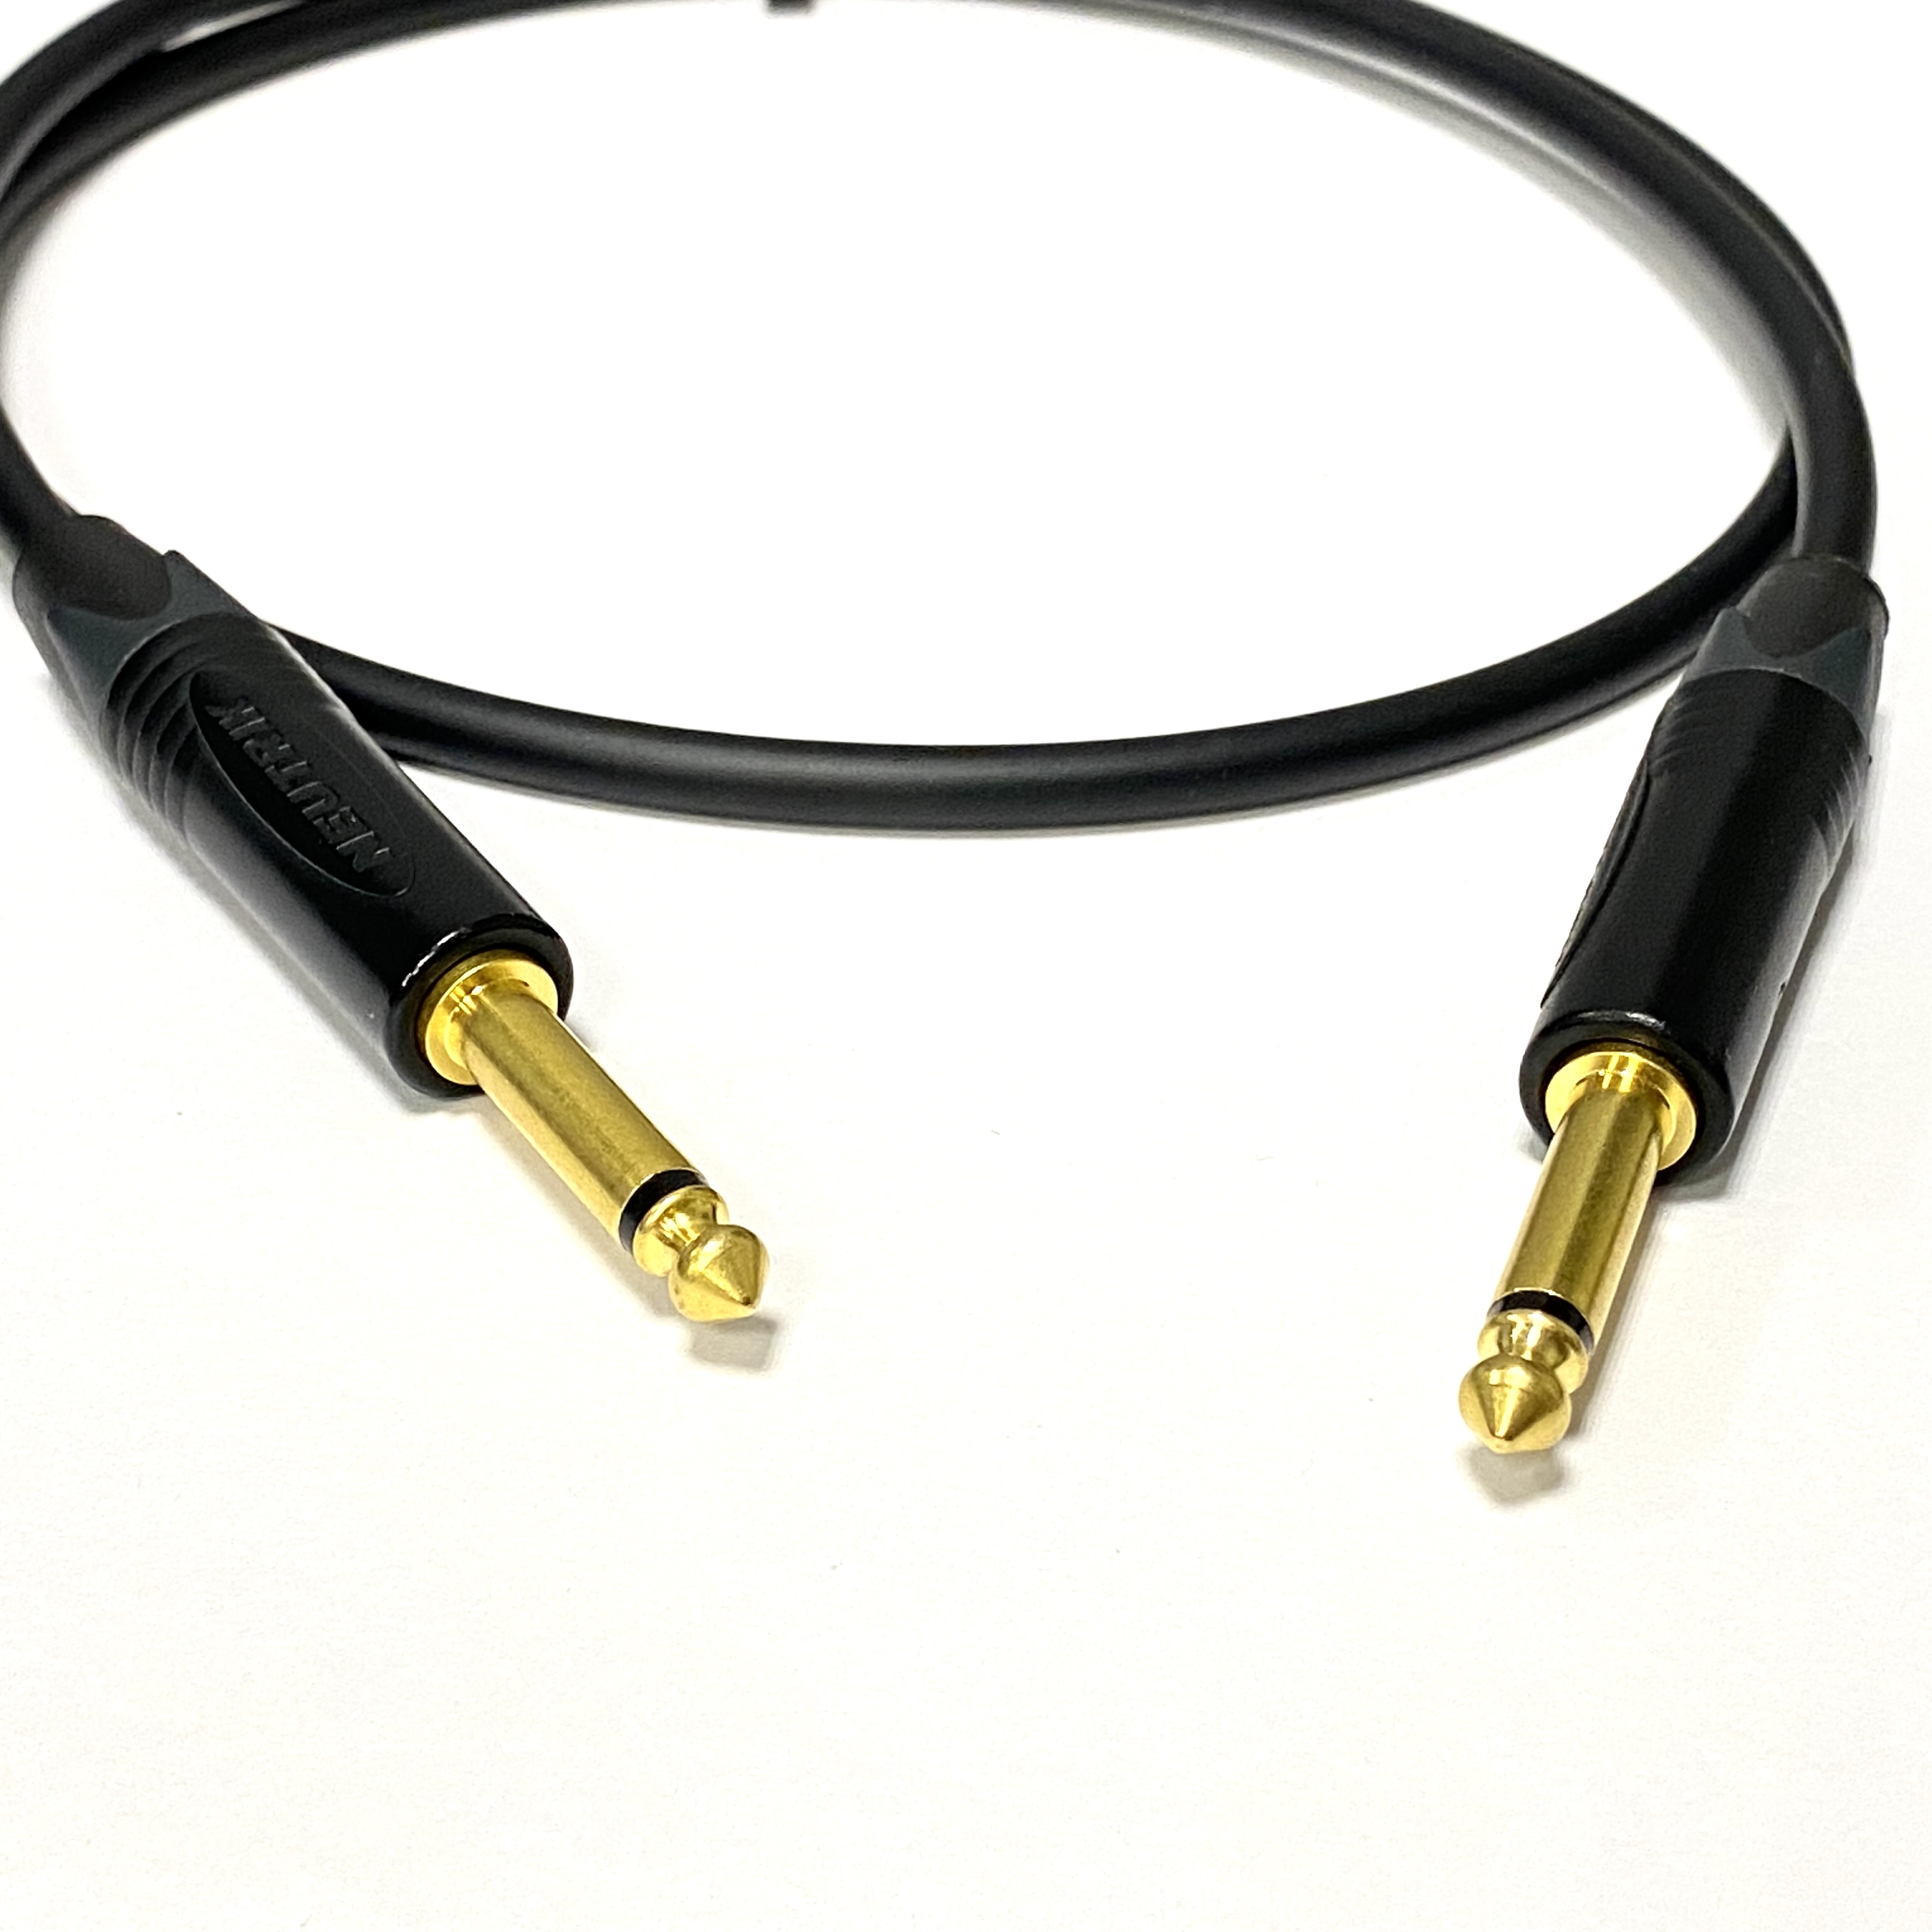 2m профессиональный инструментальный аудио кабель Jack - Jack 6.3 mm mono Neutrik GOLD Кабели  Jack - Jack 6.3 mm mono стандартные (ins1)